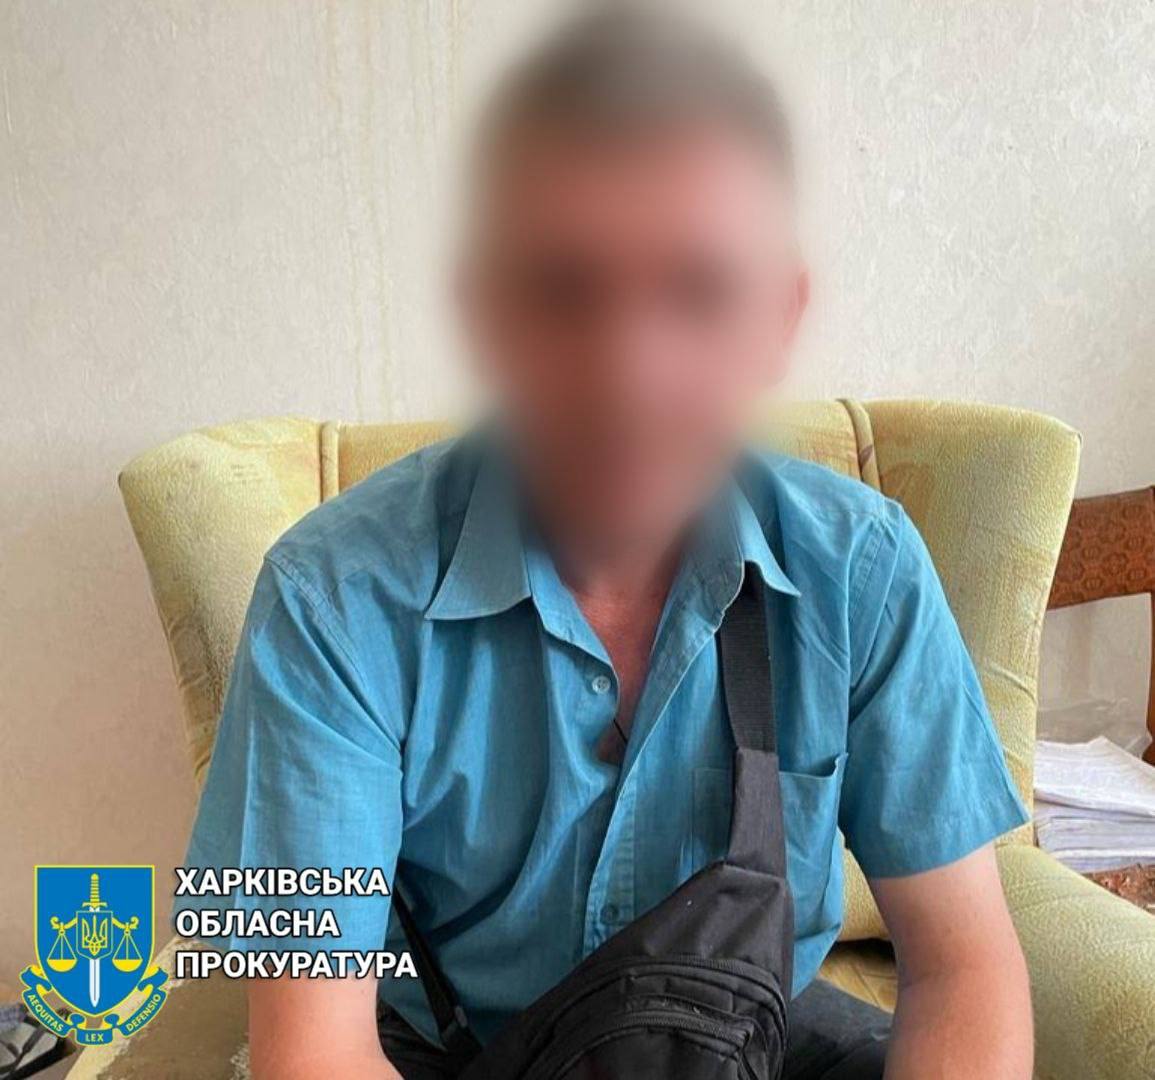 Глава одной из общественных организаций Харькова подозревается в изнасиловании подростка